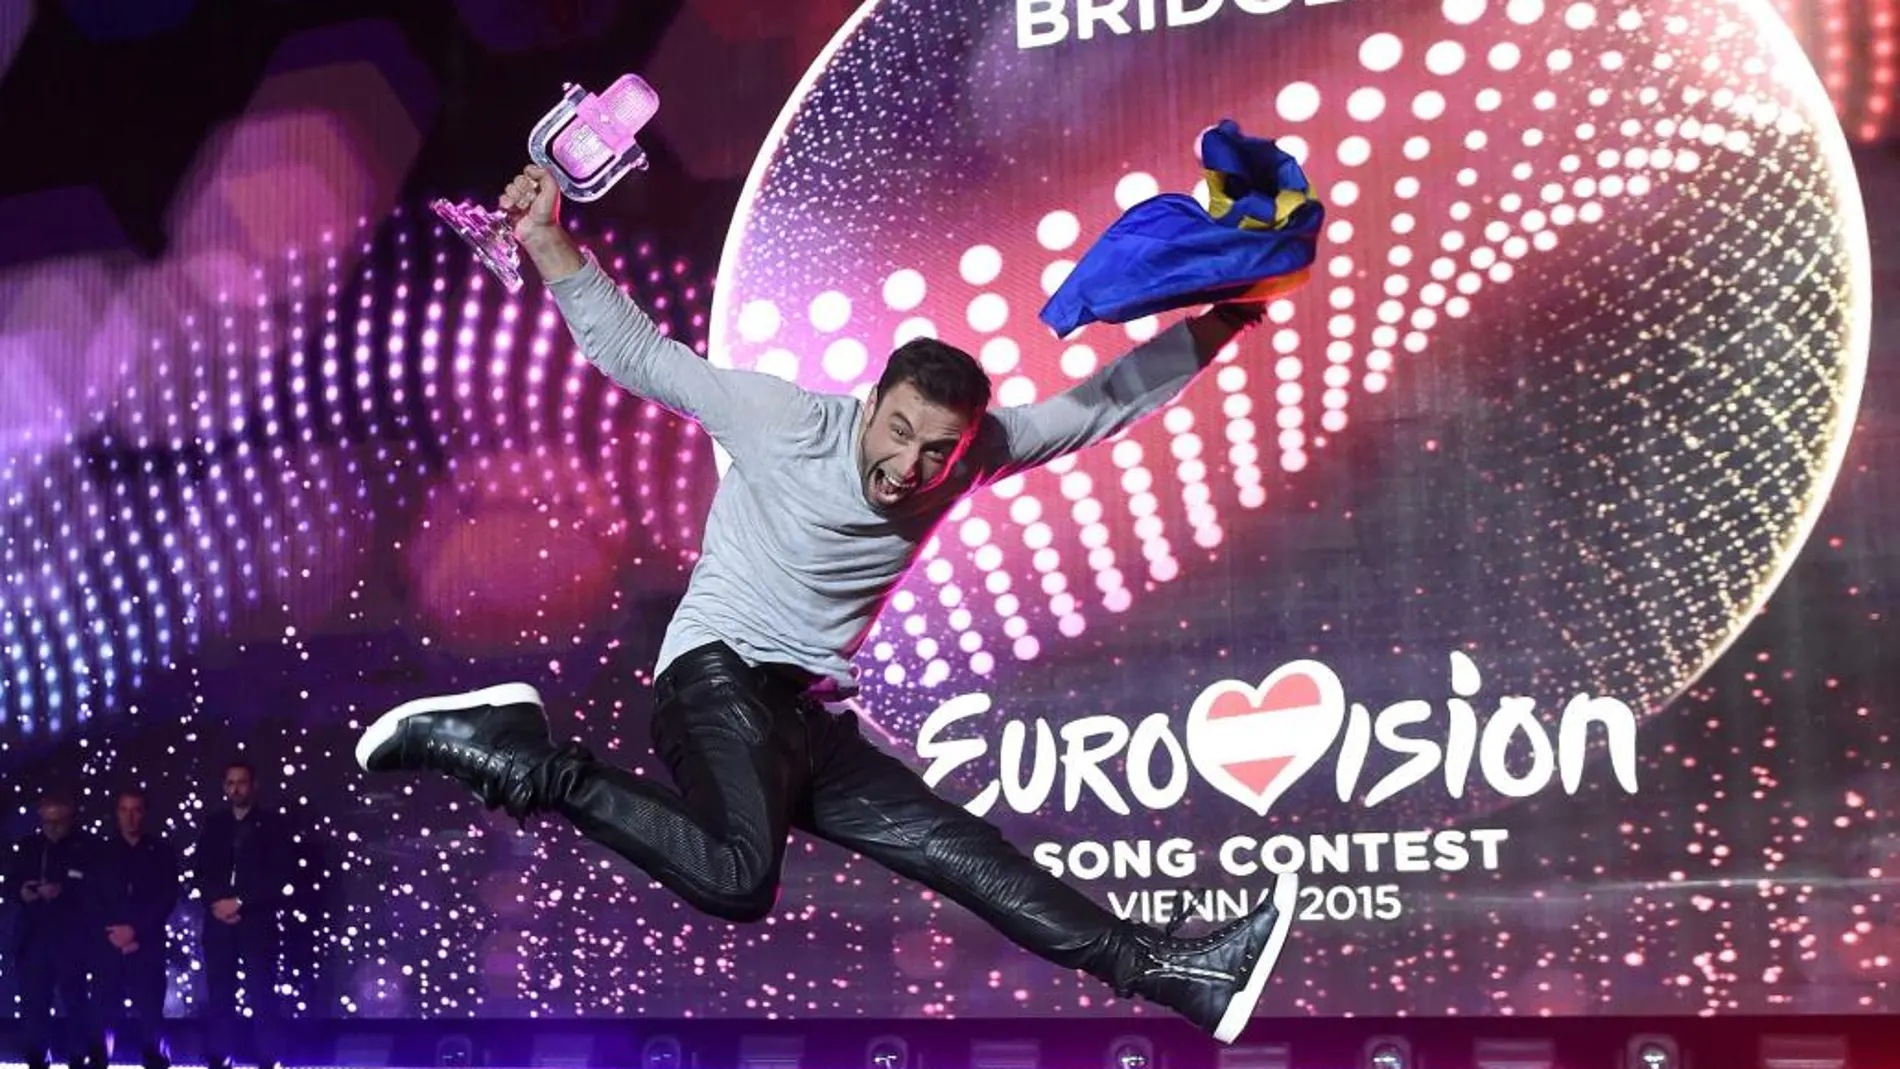 Mans Zelmerloew, ganador de Eurovisión 2015